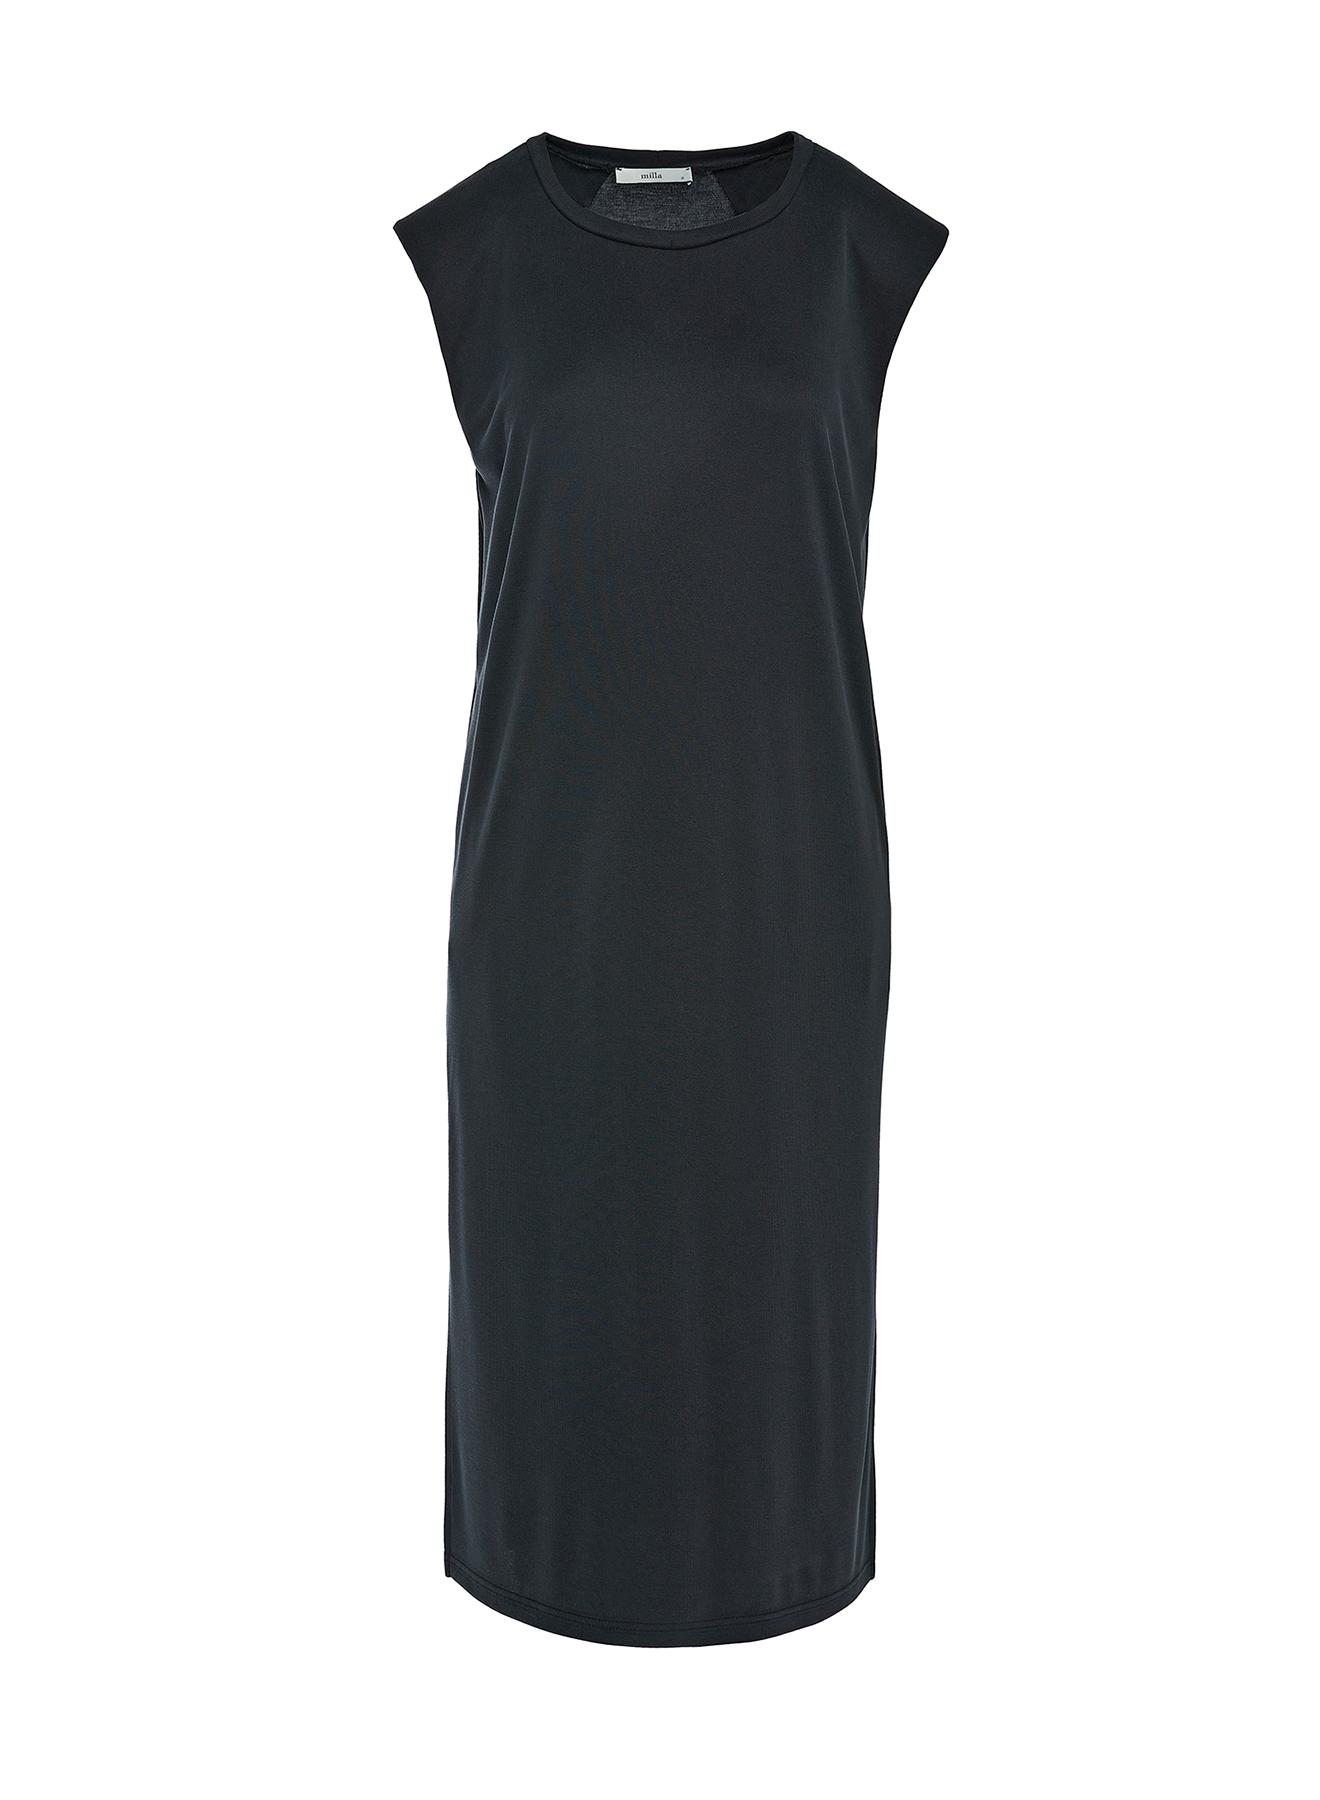 Μαύρο μακρύ Φόρεμα αμάνικο Milla - 1